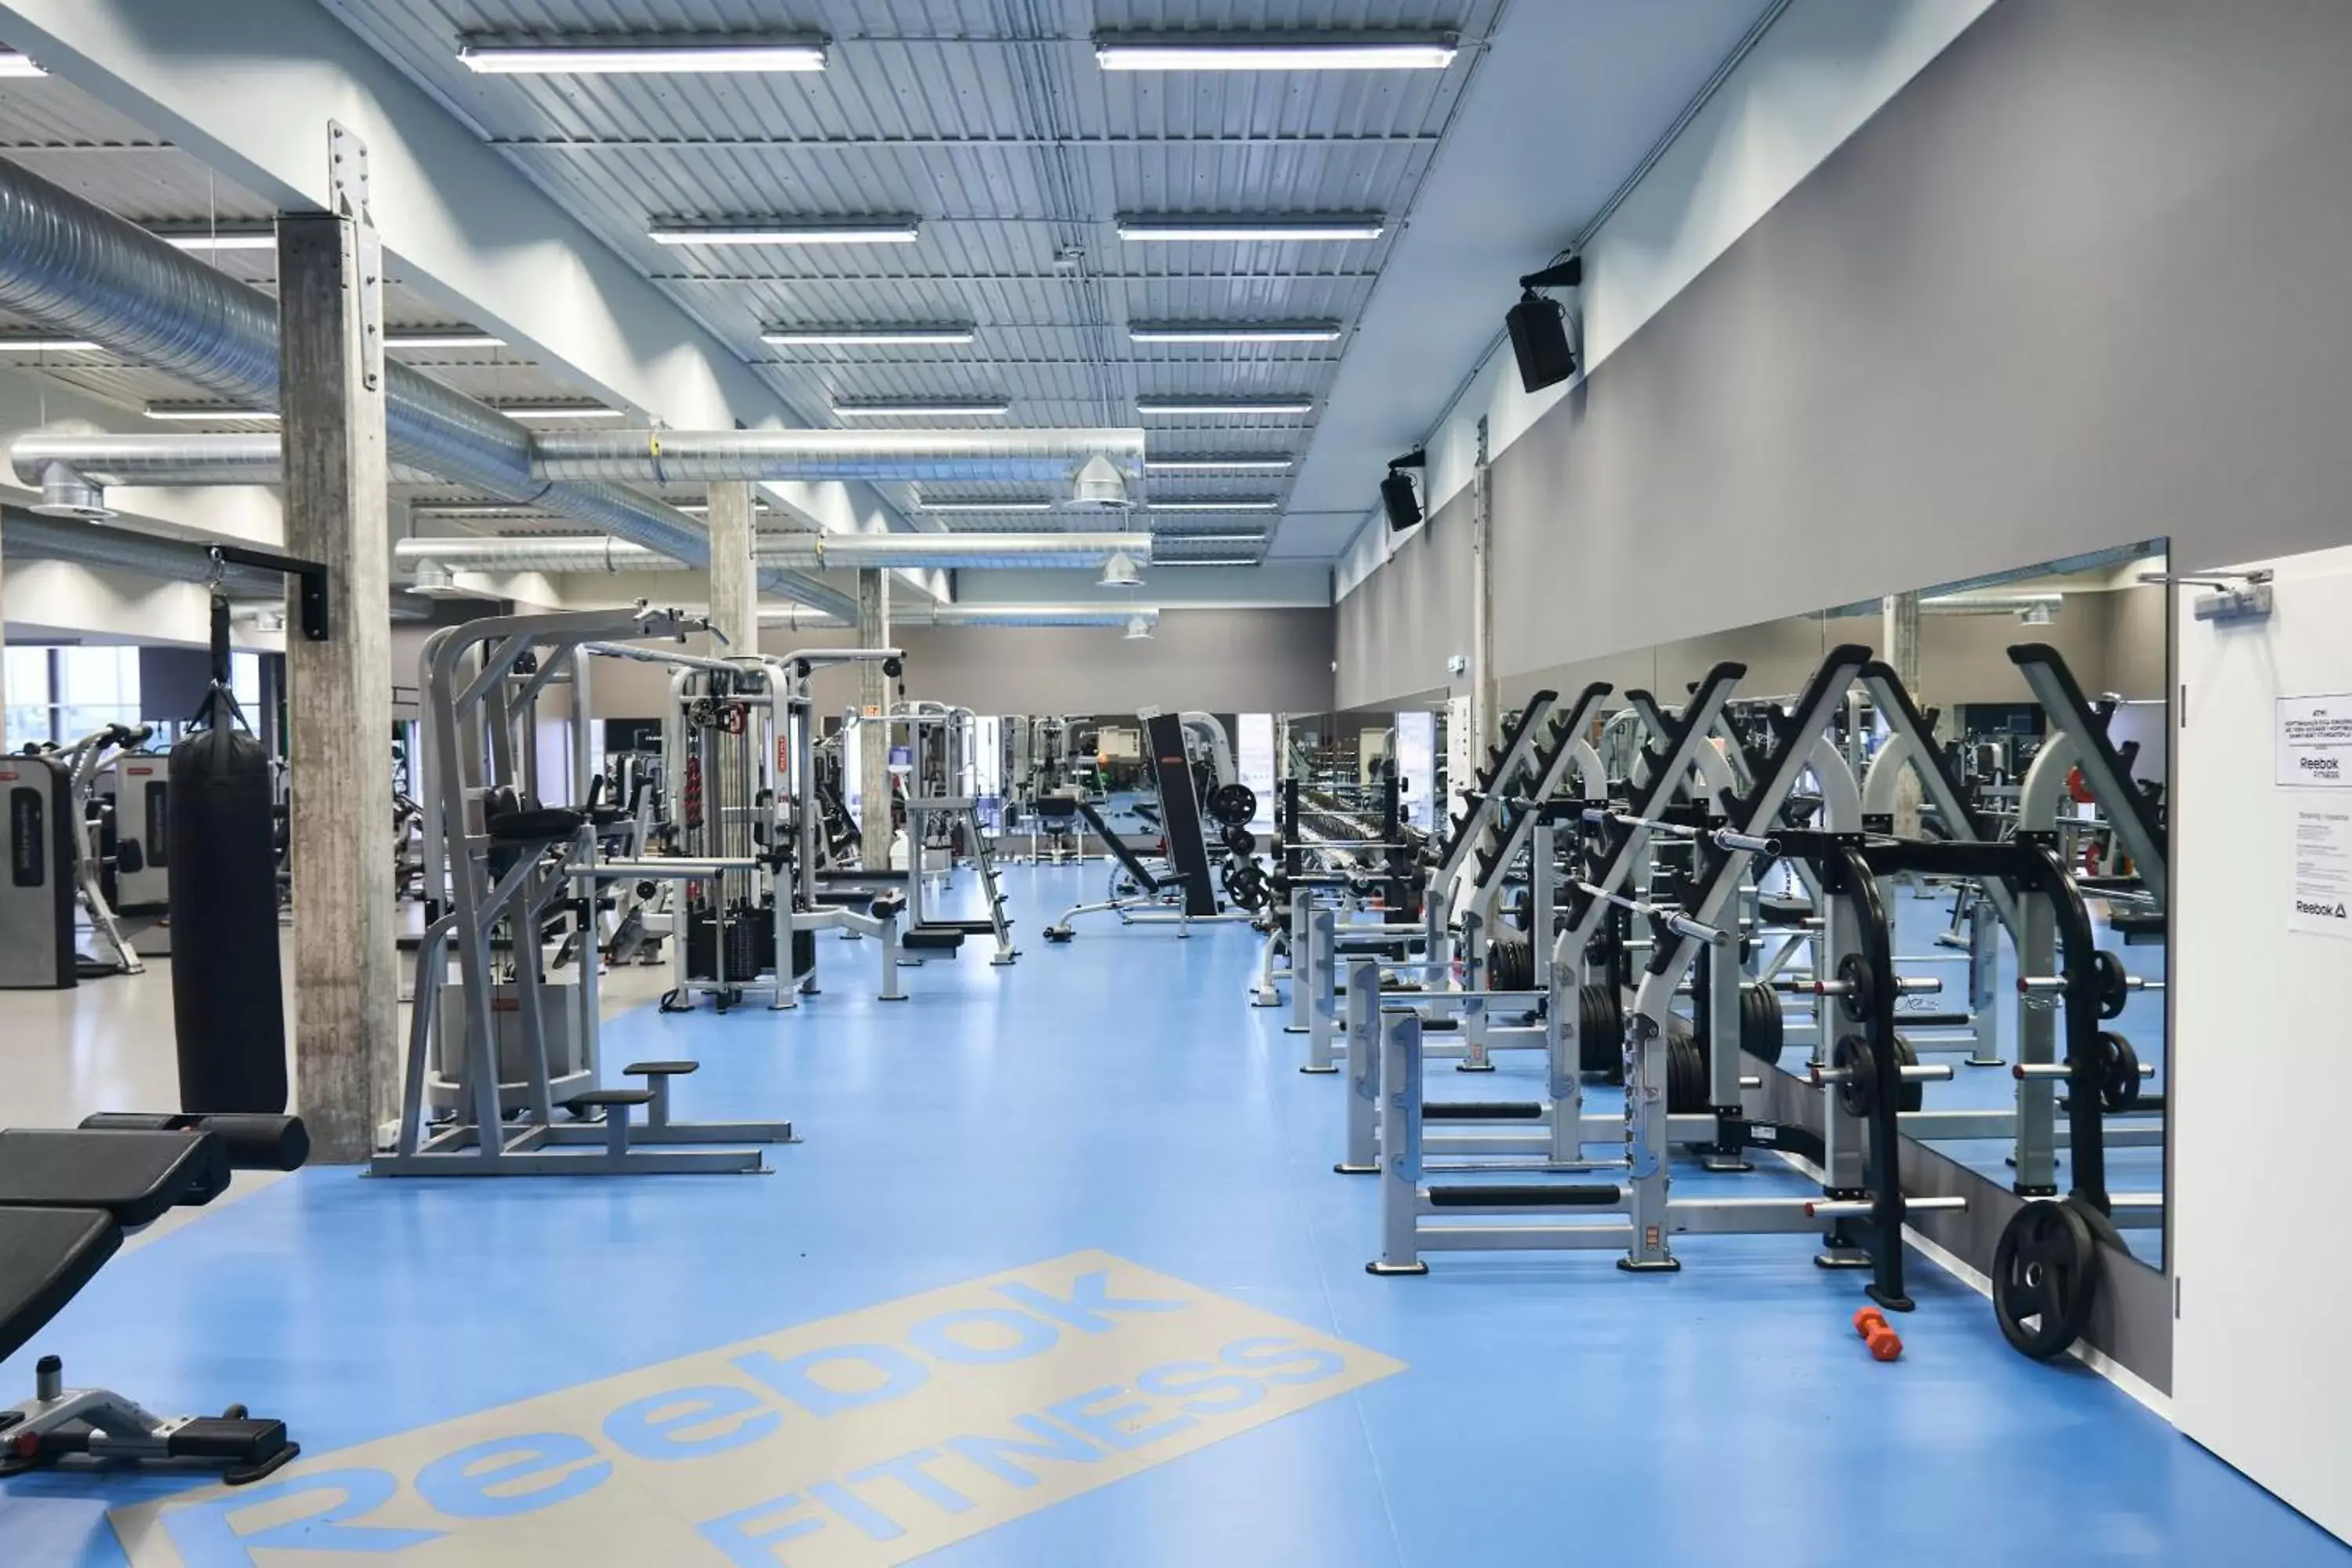 Fitness centre/facilities, Fitness Center/Facilities in Hótel Vellir